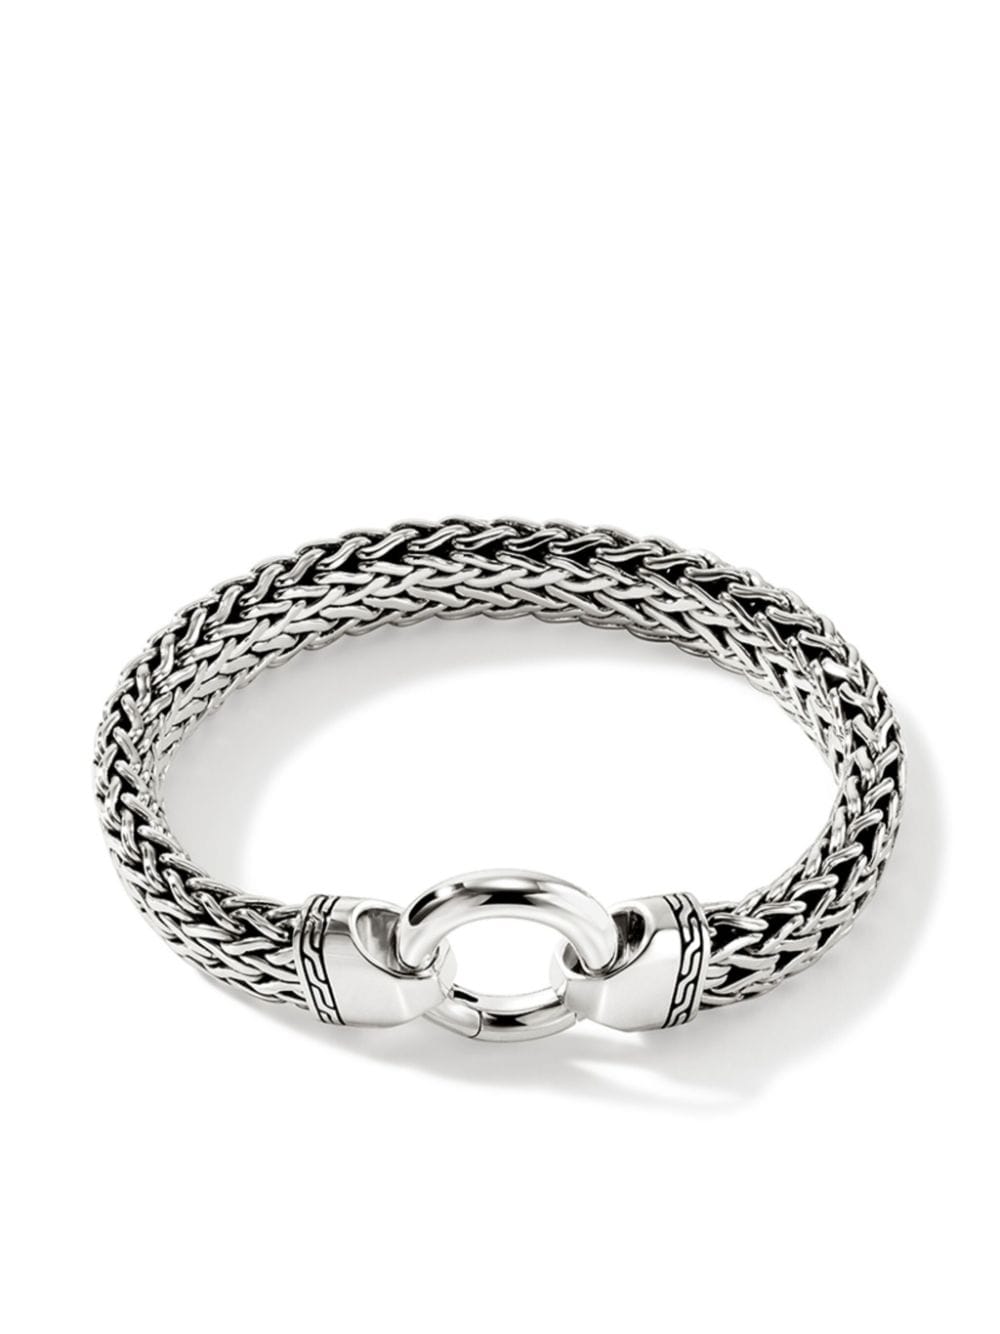 sterling silver wheat-chain bracelet